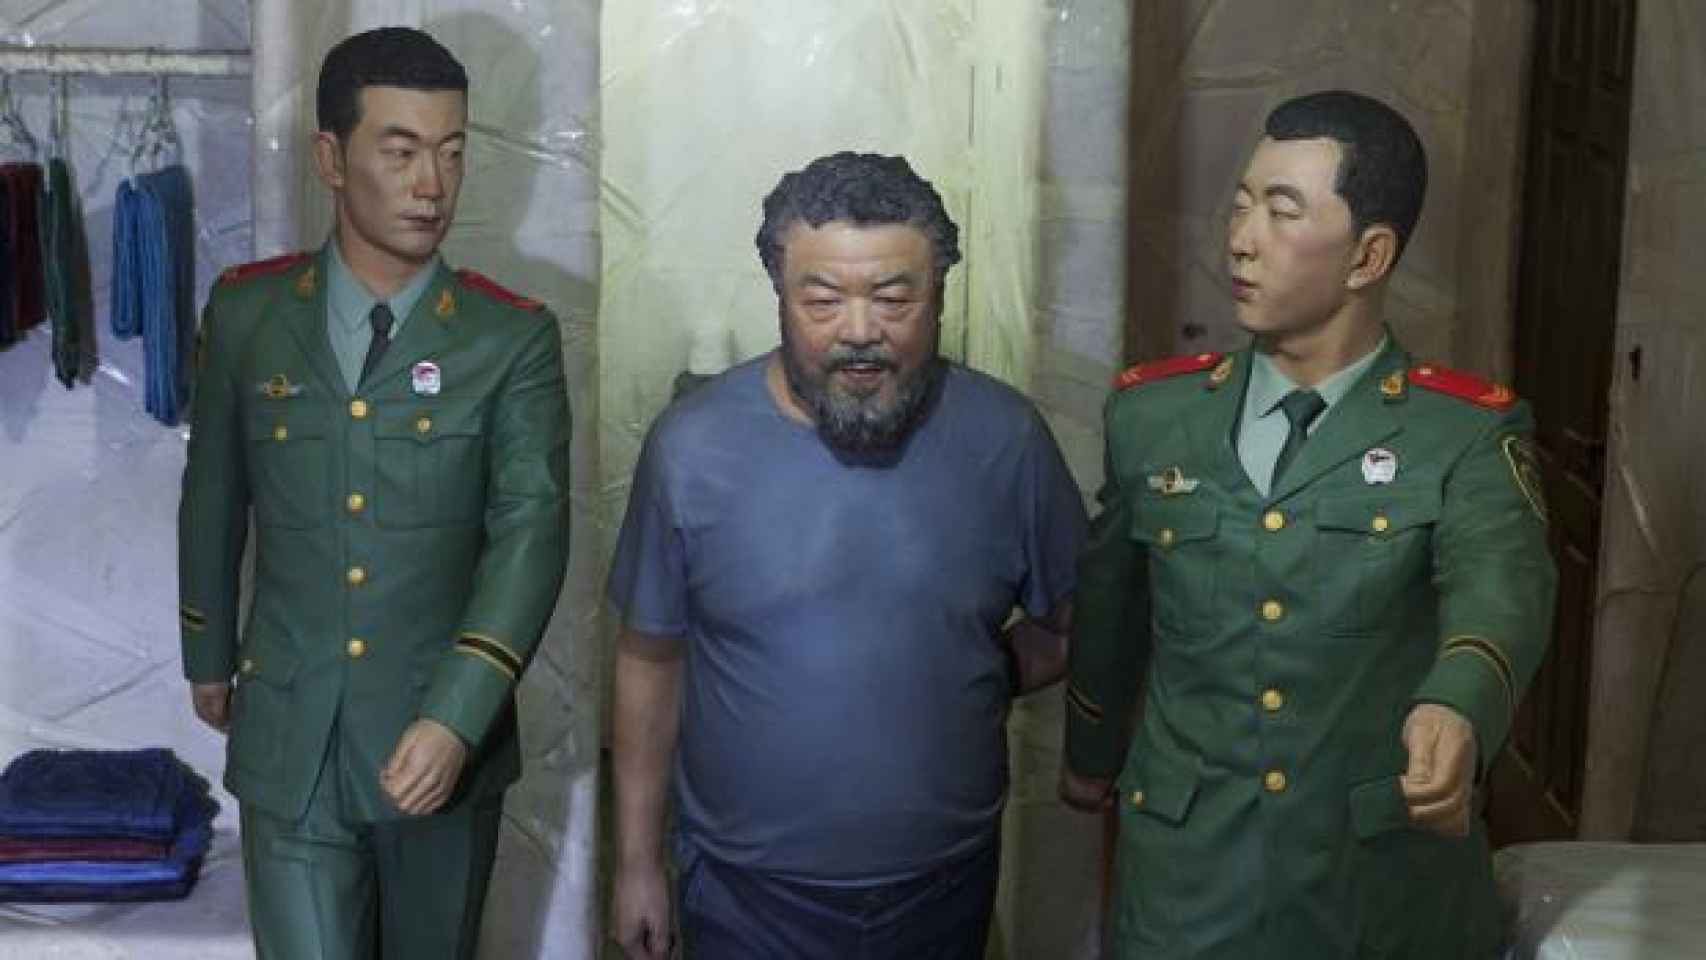 La obra S.A.C.R.E.D., evoca los casi tres meses de cautiverio de Ai Weiwei.